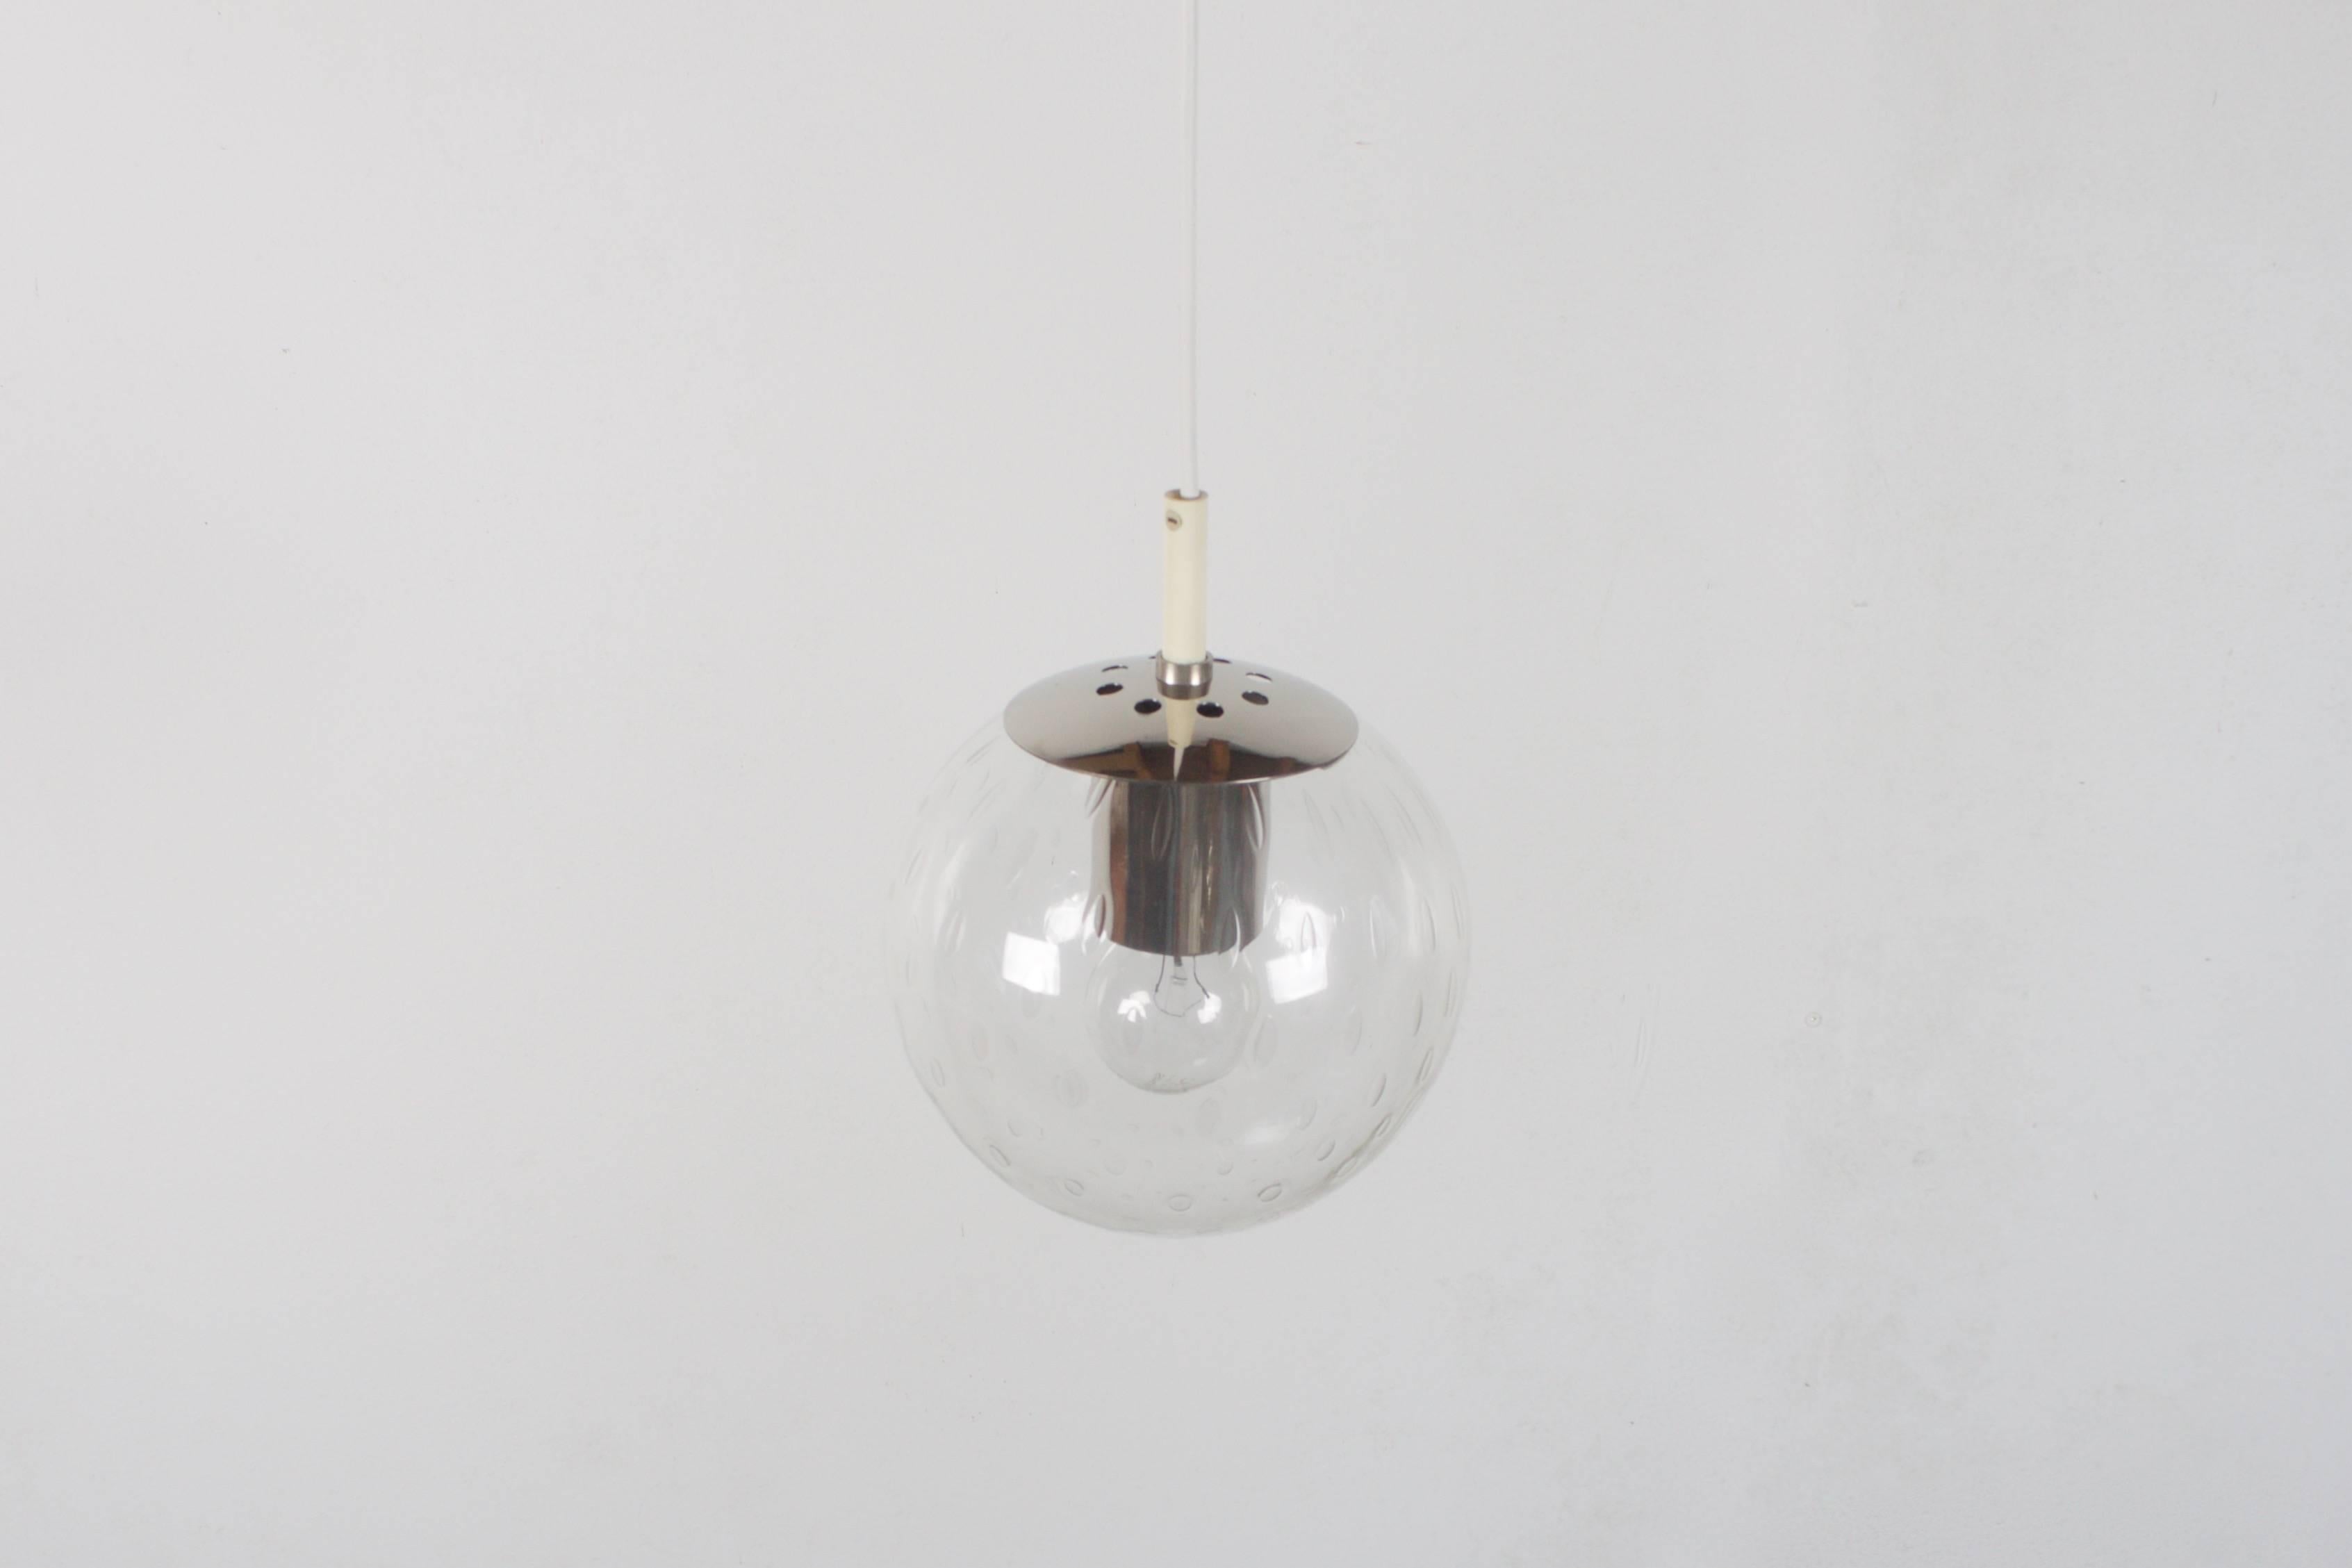 Petit pendentif 'Light-drops' de RAAK Amsterdam en très bon état.

Six disponibles.

Globe en verre soufflé à la main de 18 cm. (7 pouces) avec un motif de goutte d'eau emprisonné dans le verre. 

Le motif des globes crée un effet spectaculaire